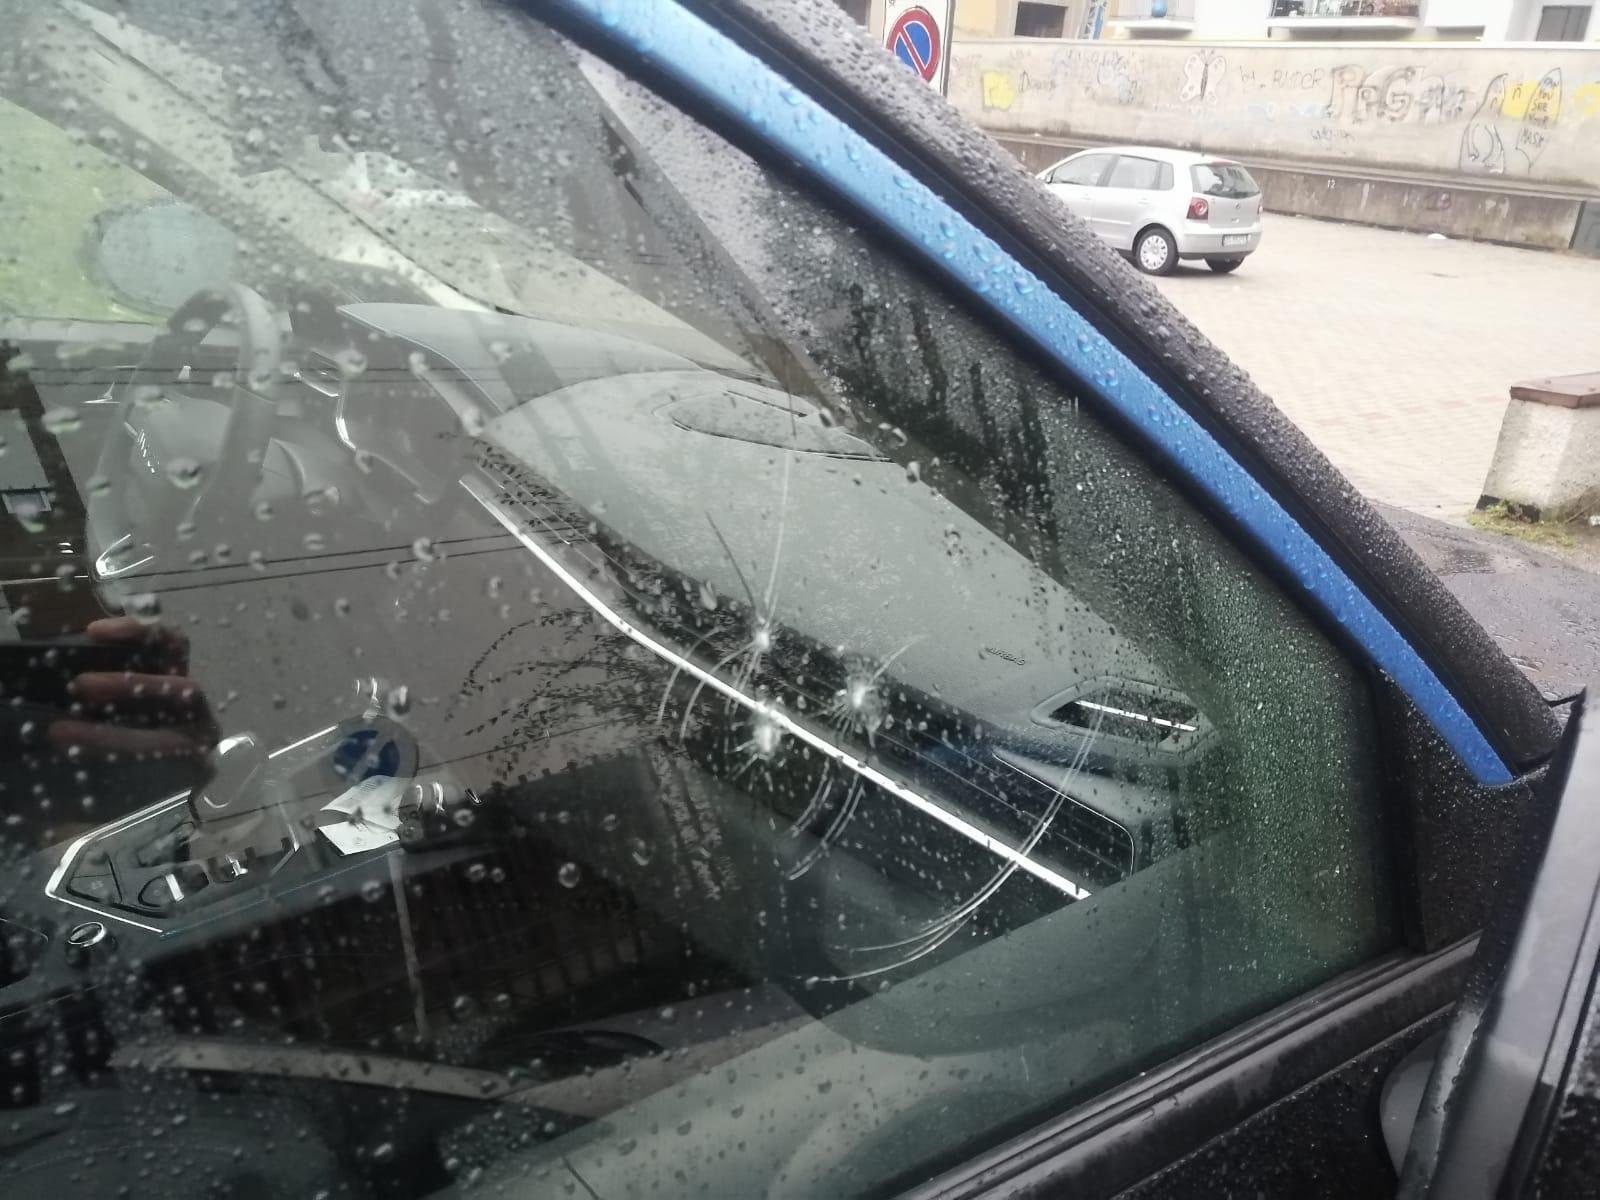 20221116-auto-danneggiate-finestrino-rotto-1